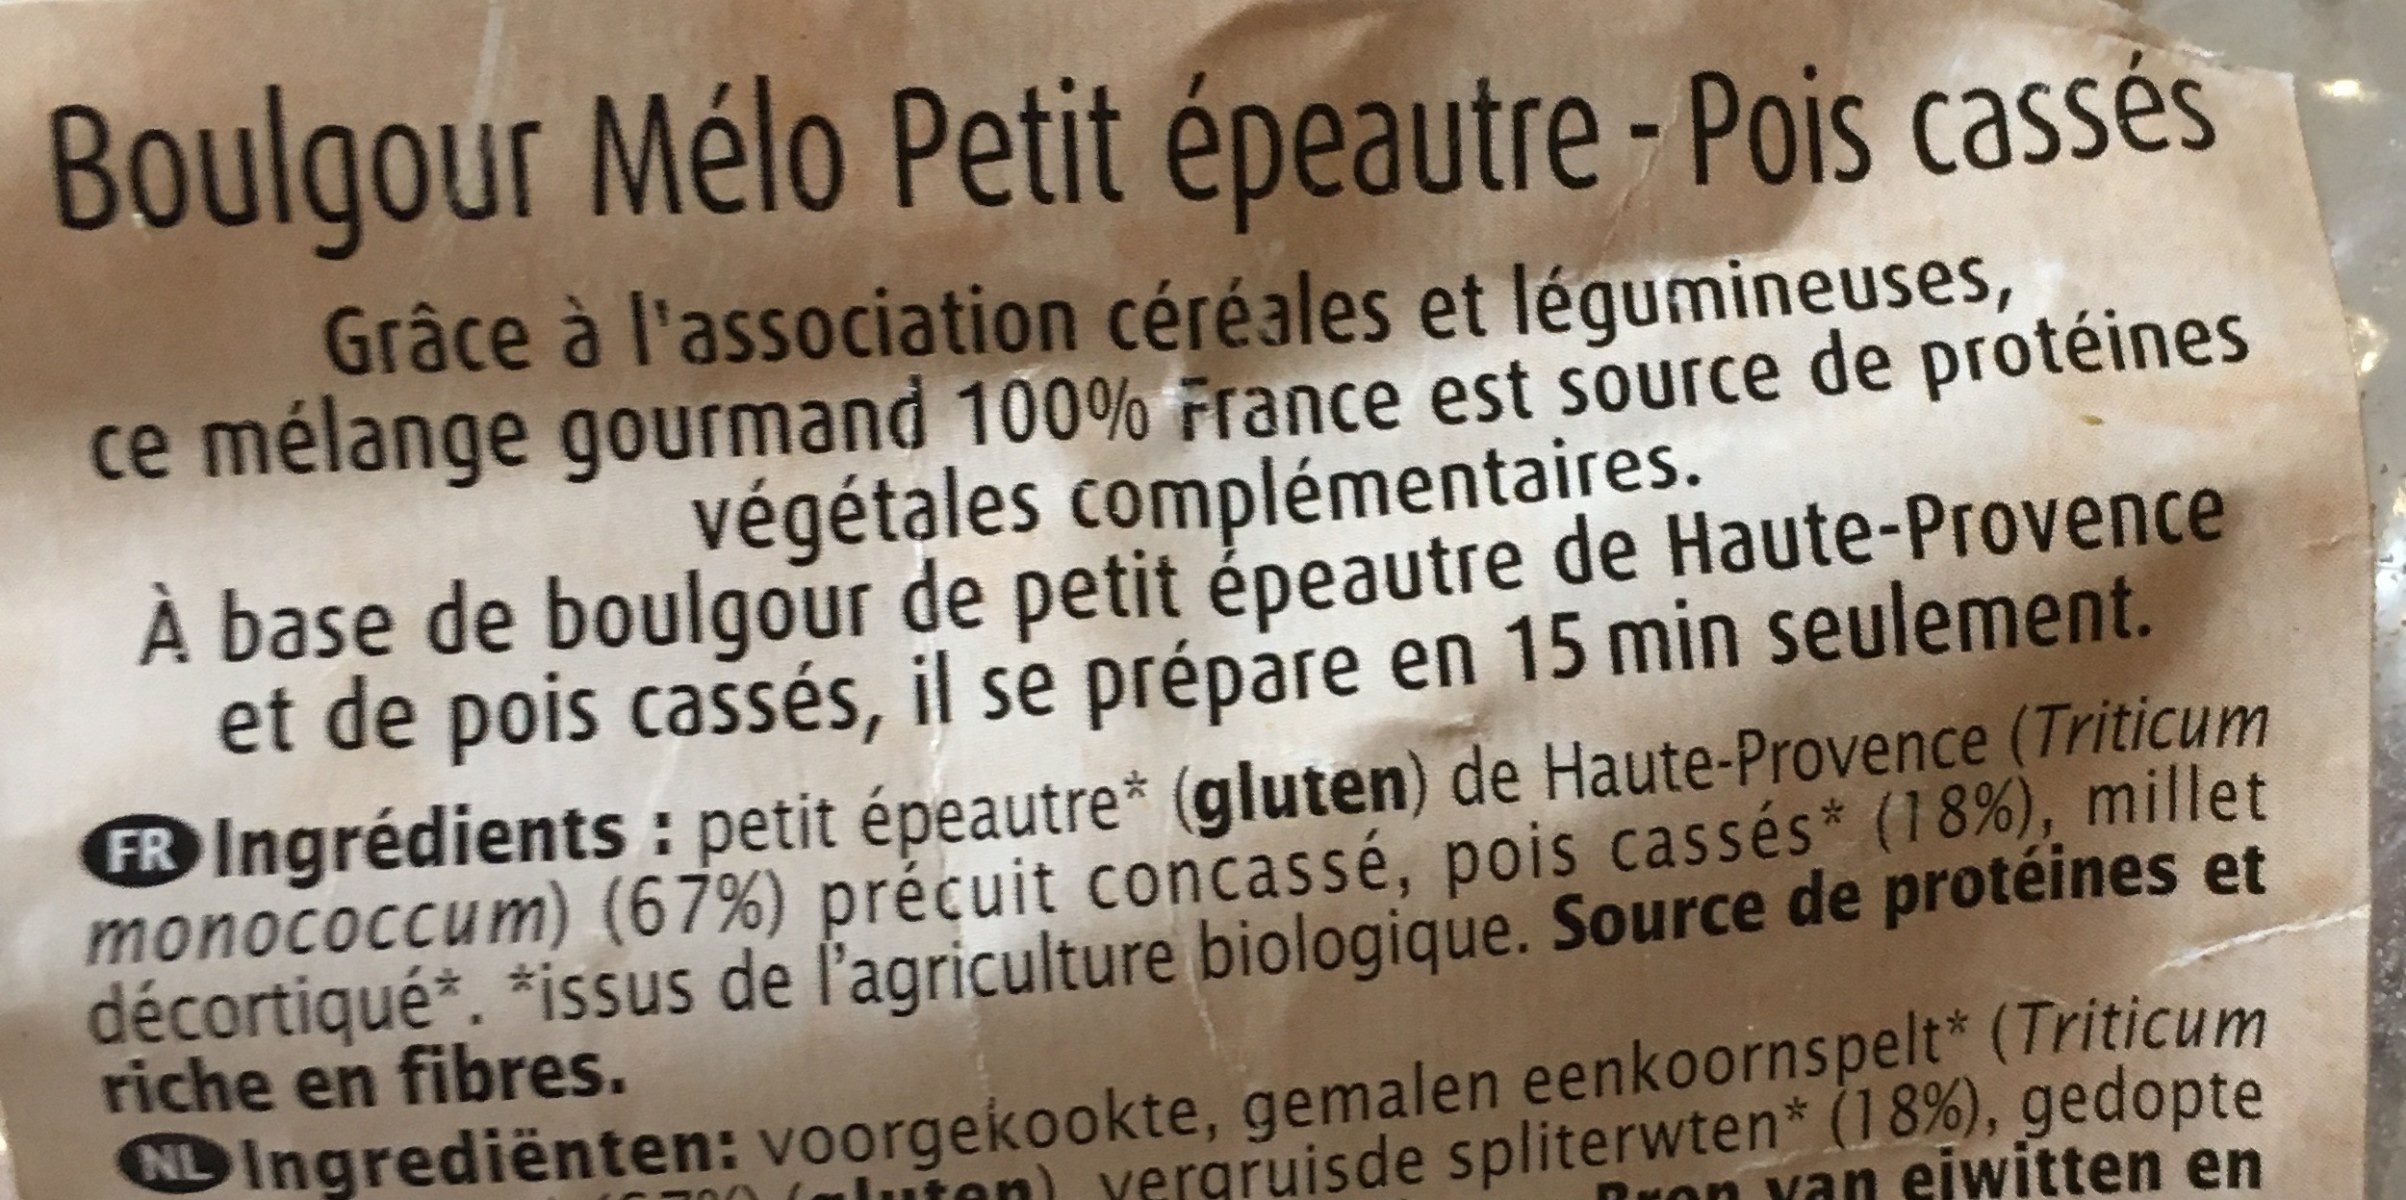 Boulgour Mélo Petit Épeautre pois cassés - Ingredienser - fr